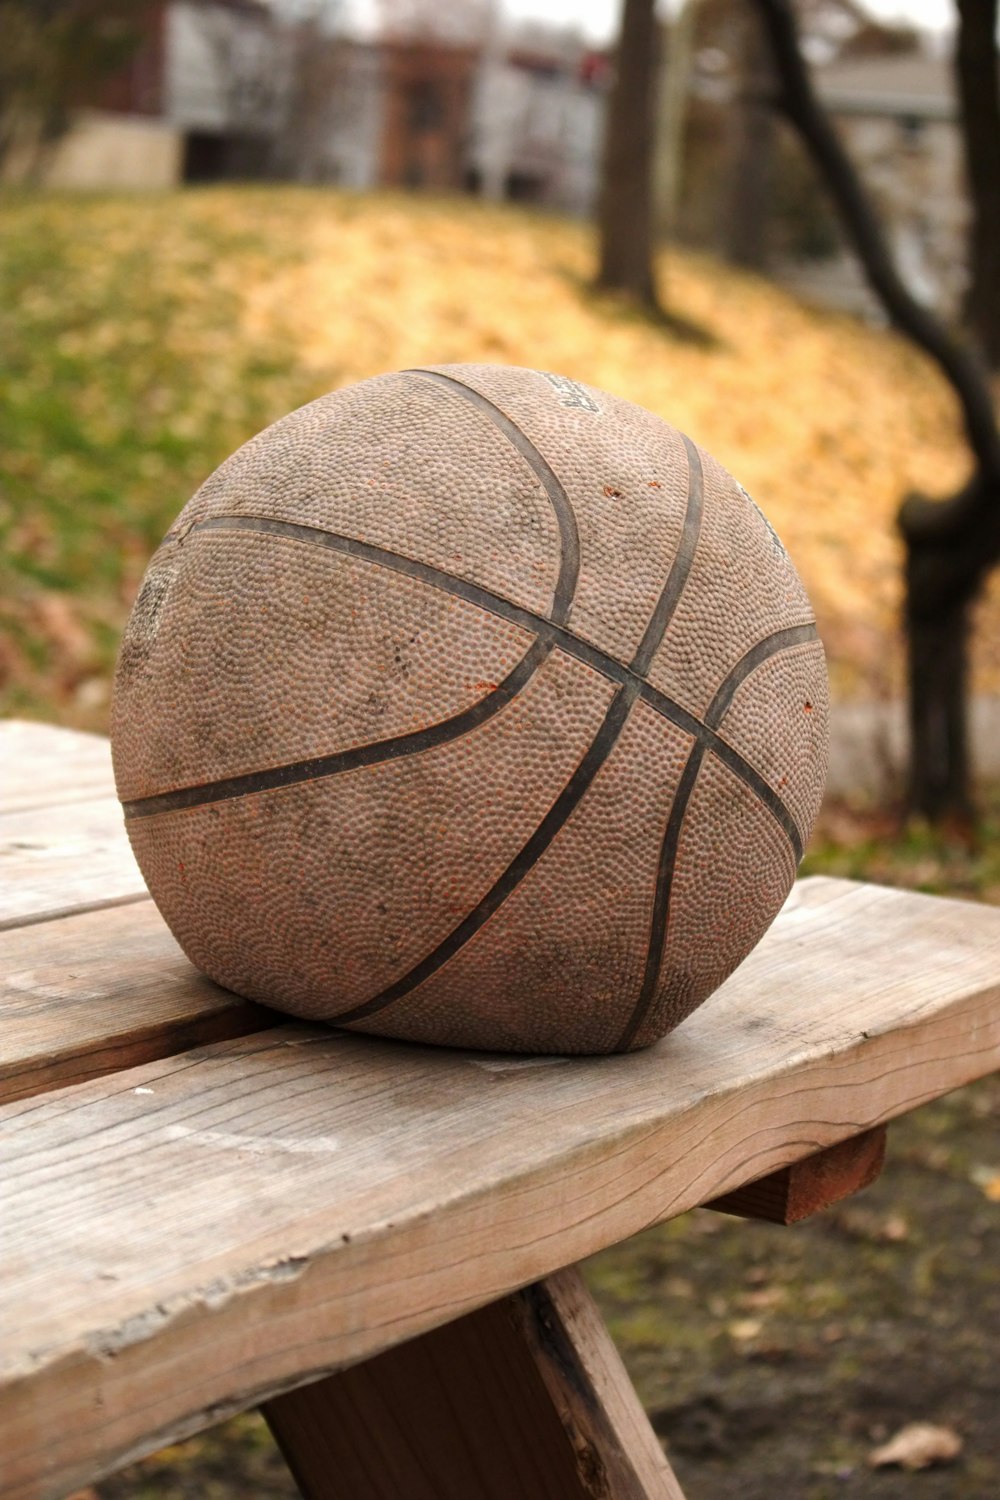 una pelota de baloncesto sentada encima de un banco de madera